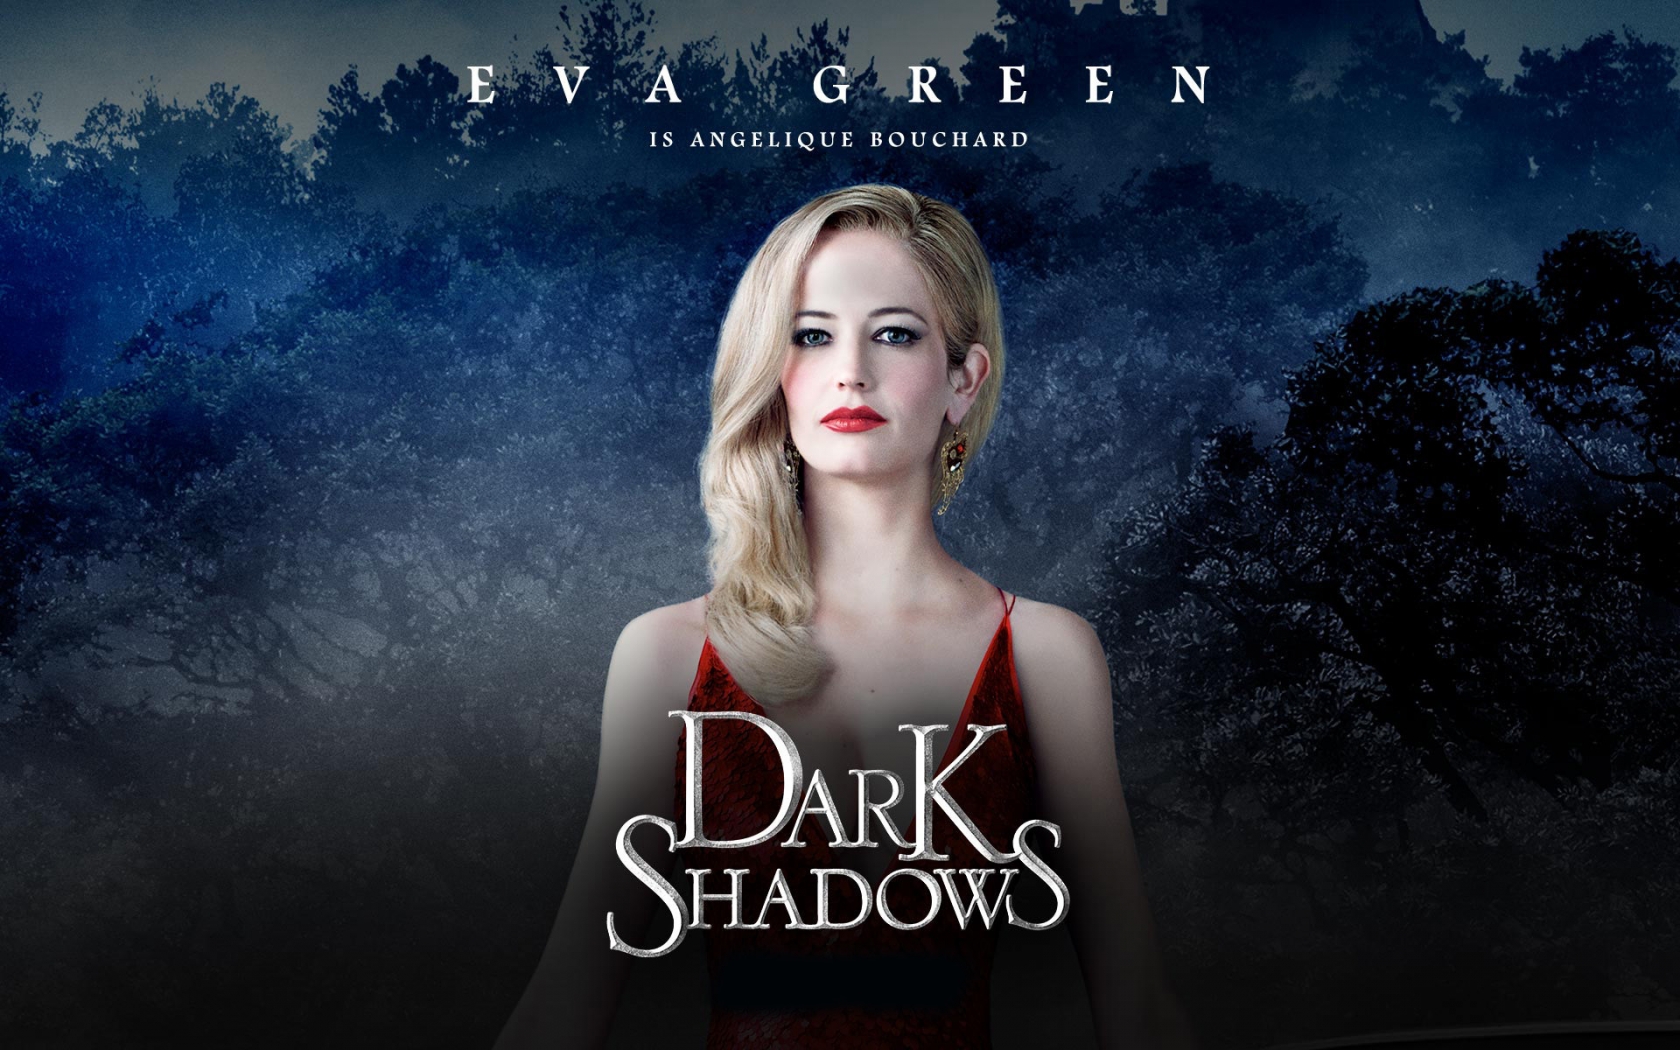 Dark Shadows Eva Green for 1680 x 1050 widescreen resolution